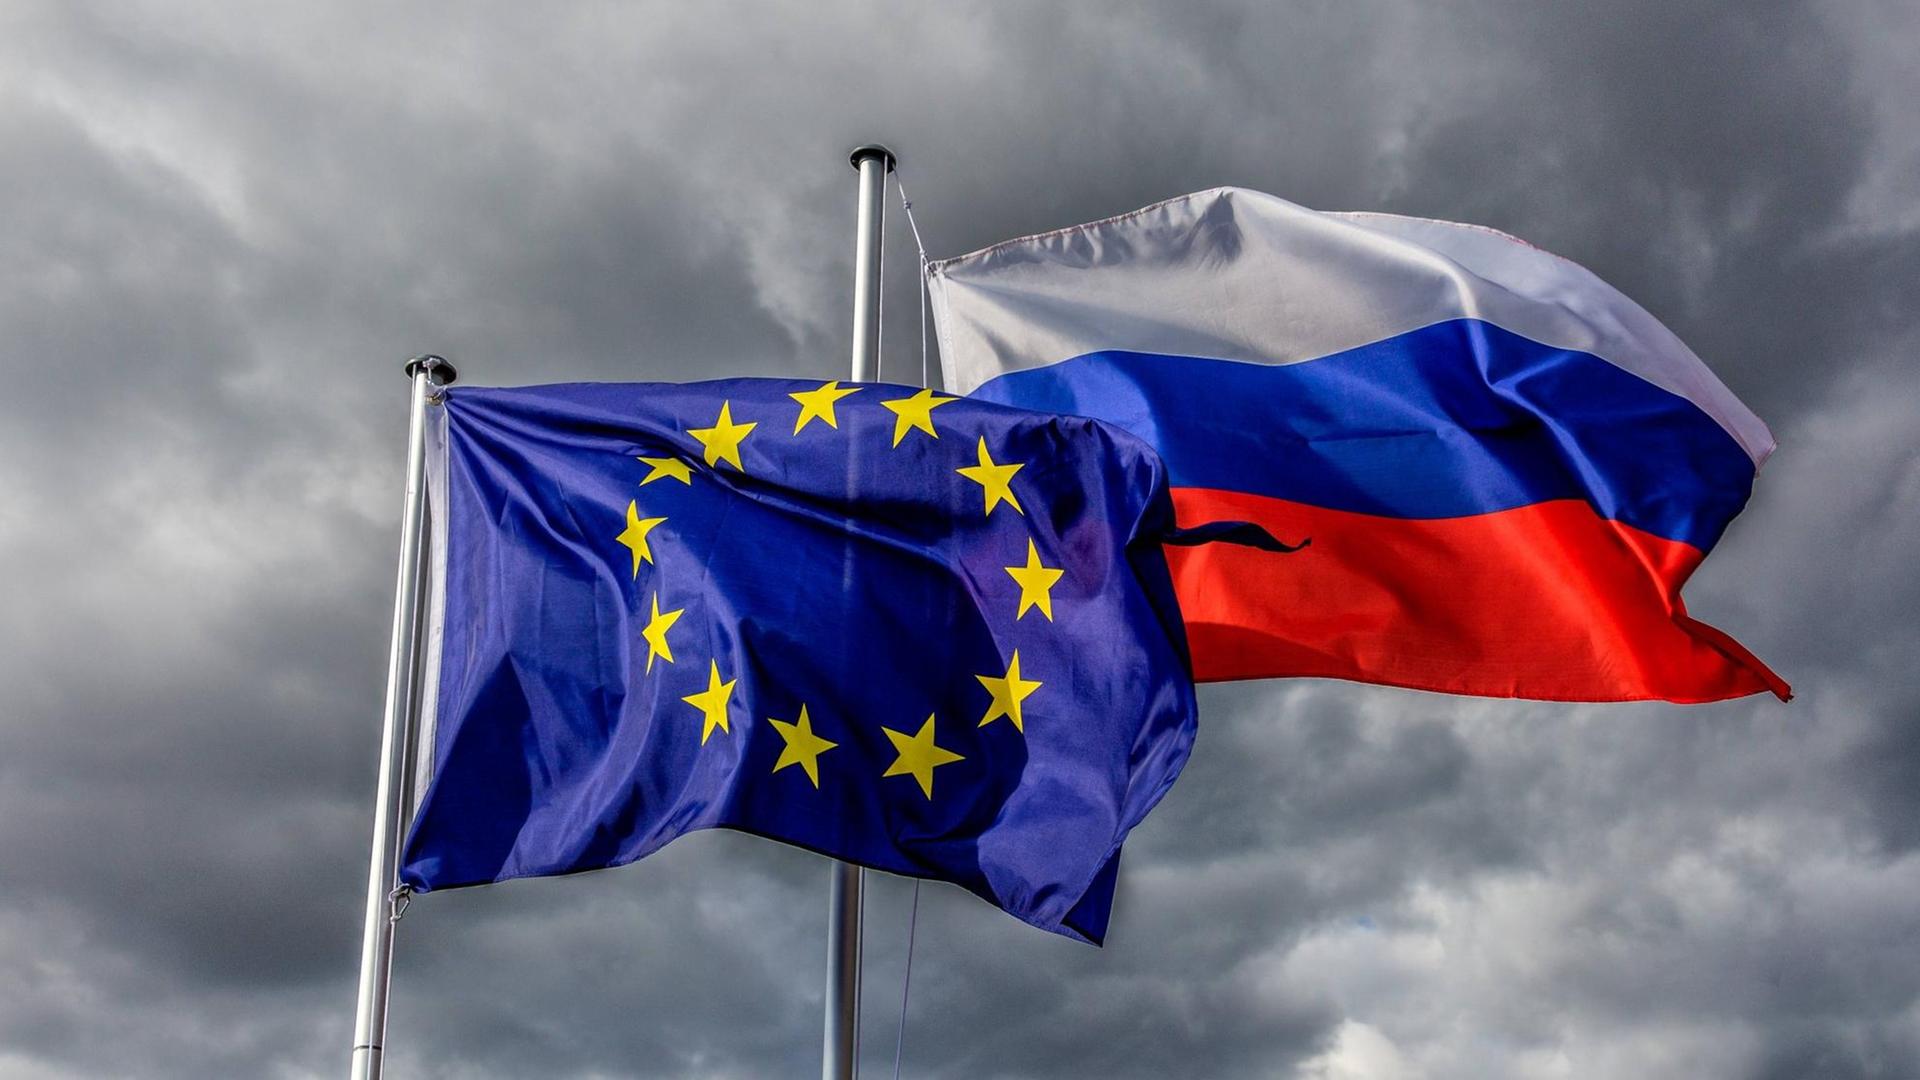 Europaflagge und Flagge der Russischen Föderation wehen vor grauem Himmel im Wind.